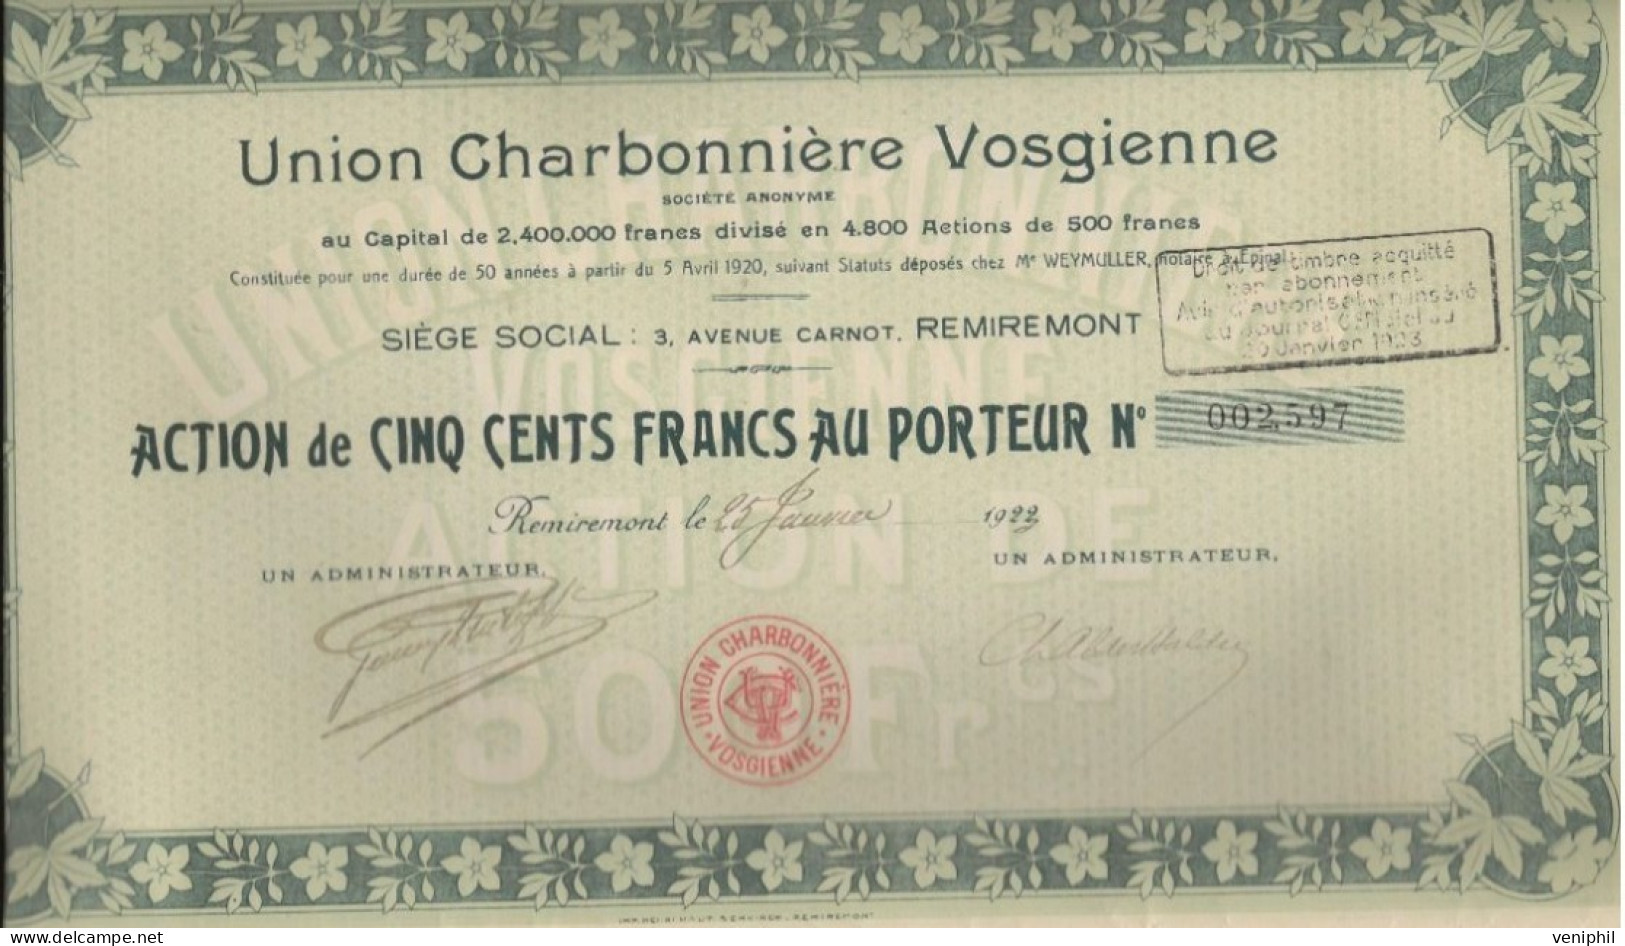 UNION CHARBONNIERE VOSGIENNE - LOT DE 4 ACTIONS DE CINQ CENT FRANCS -DIVISE EN 4800 ACTIONS - ANNEE 1922 - Mijnen